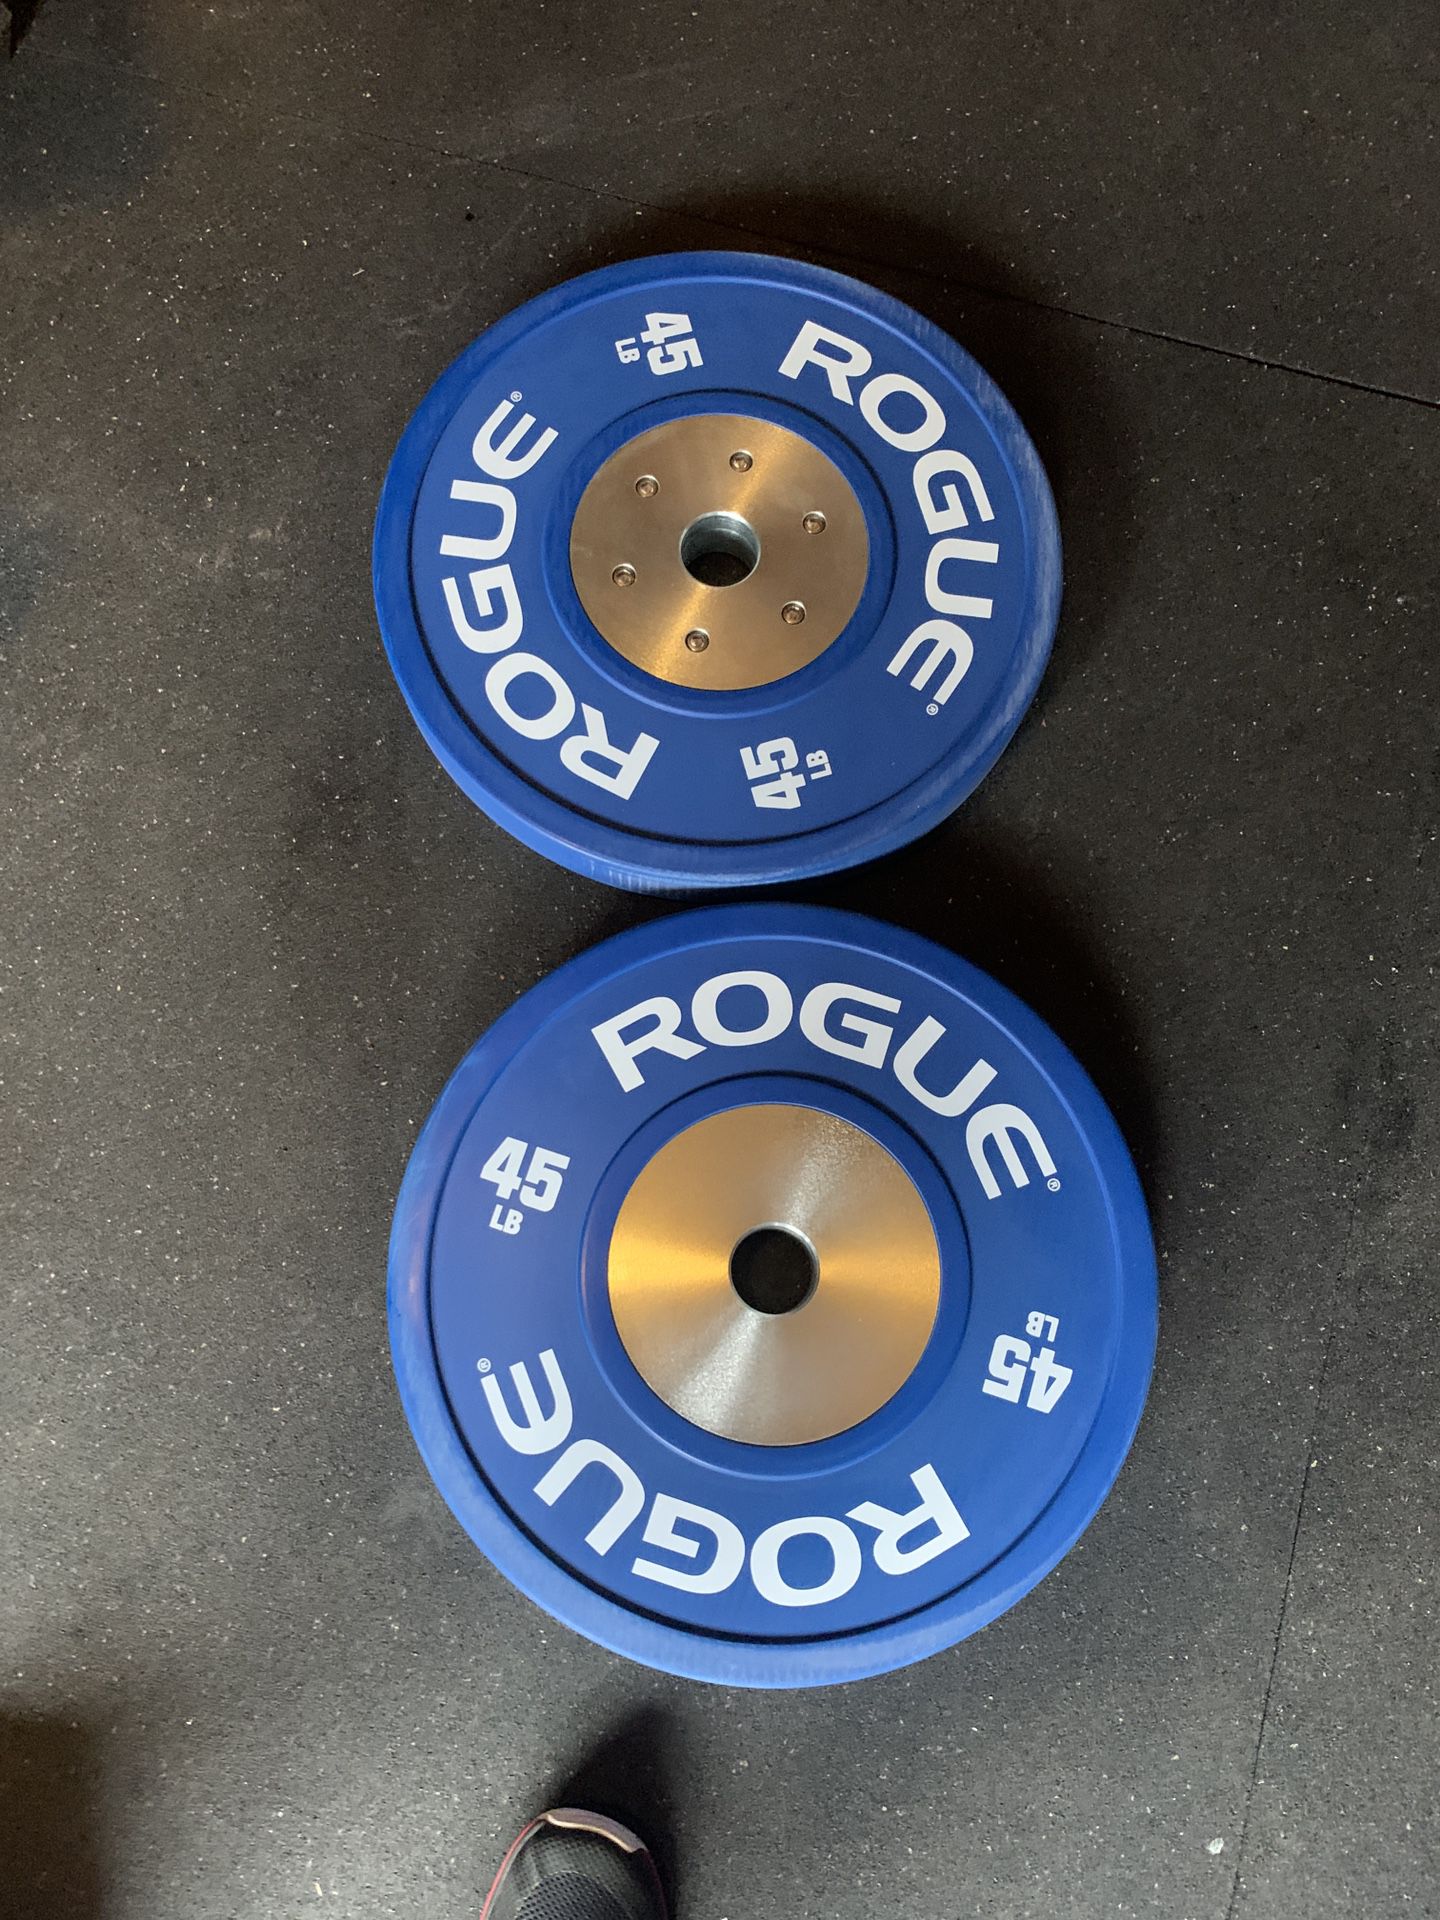 45’s rogue bumper plates New 🏋🏼‍♂️🏋🏼‍♂️💪🏽$450